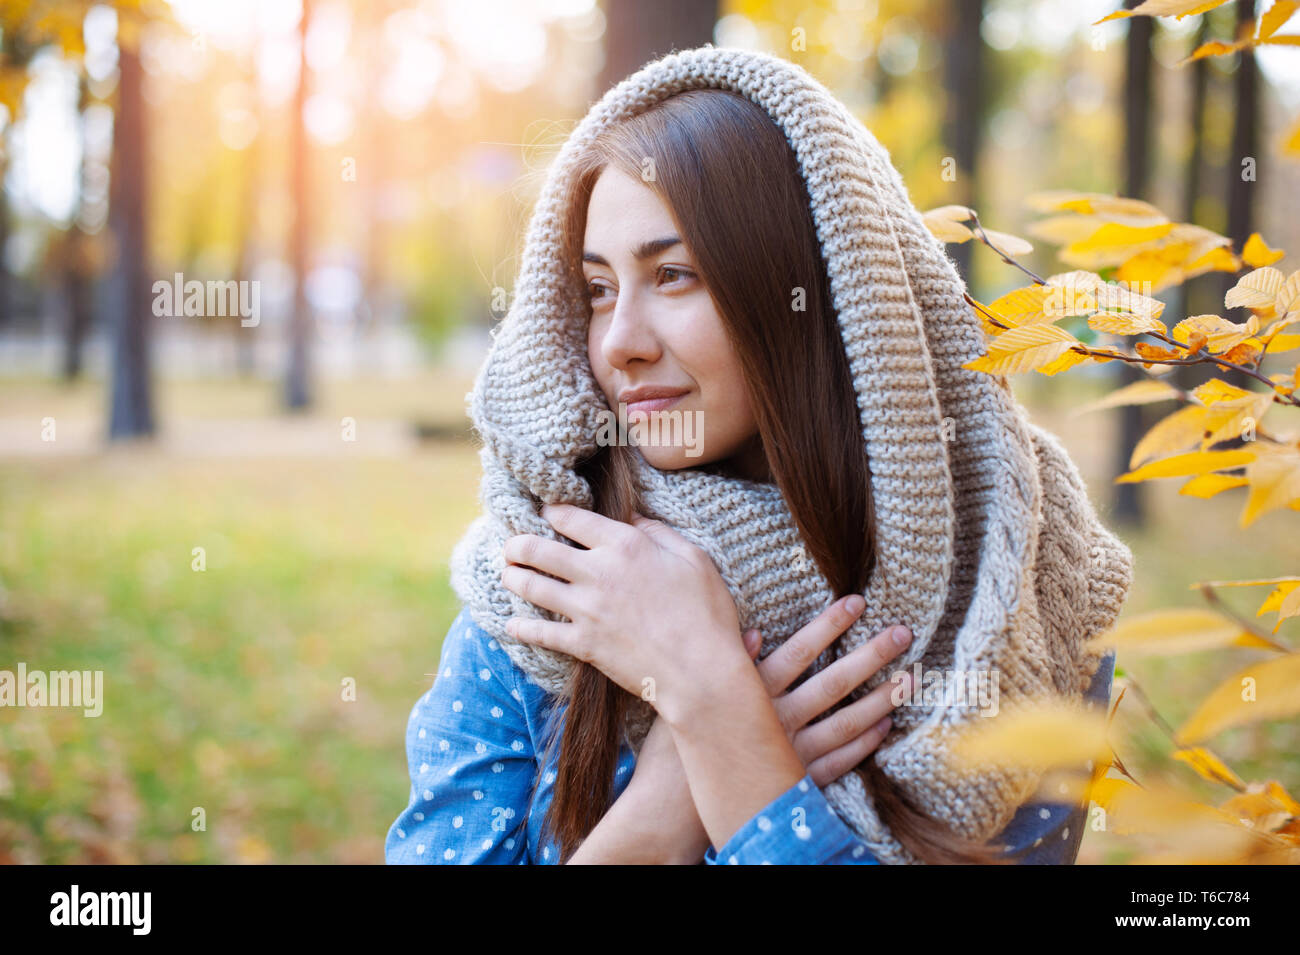 Nett schön lächeln Frau wandern in Gelb Herbst Park. Mädchen in knitten Schal in der Nähe von Baum und sie ist glücklich Stockfoto